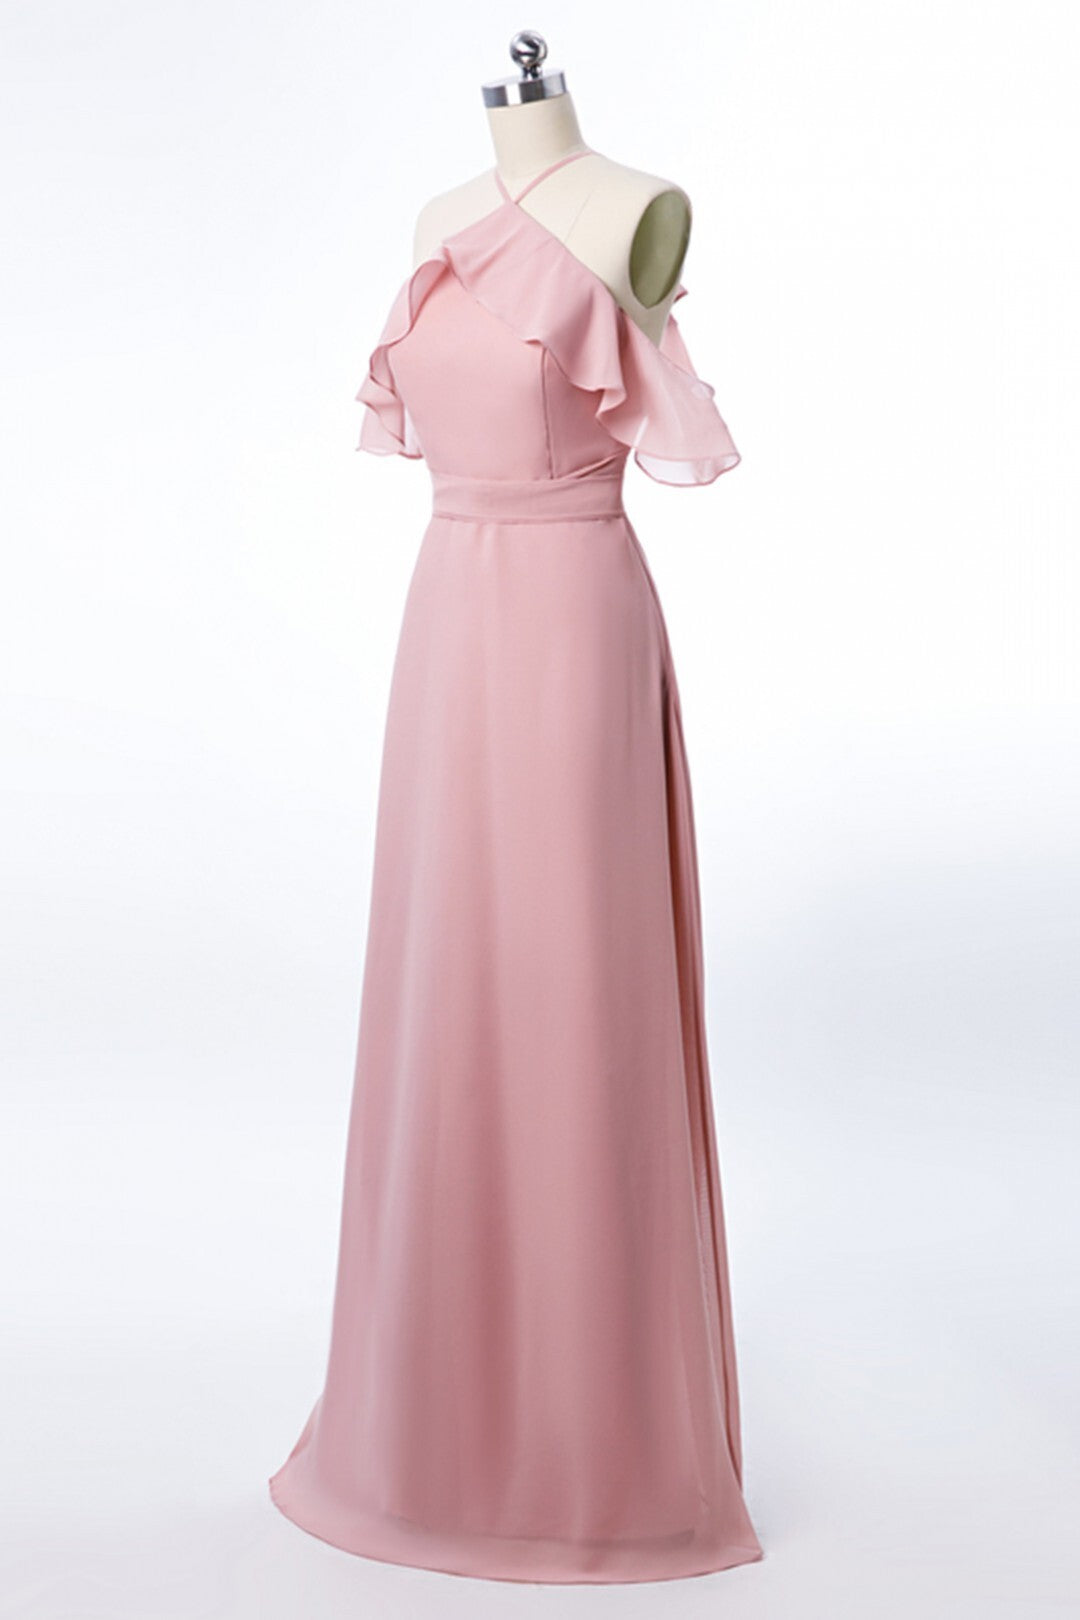 Halter Blush Pink Chiffon Long Bridesmaid Dress